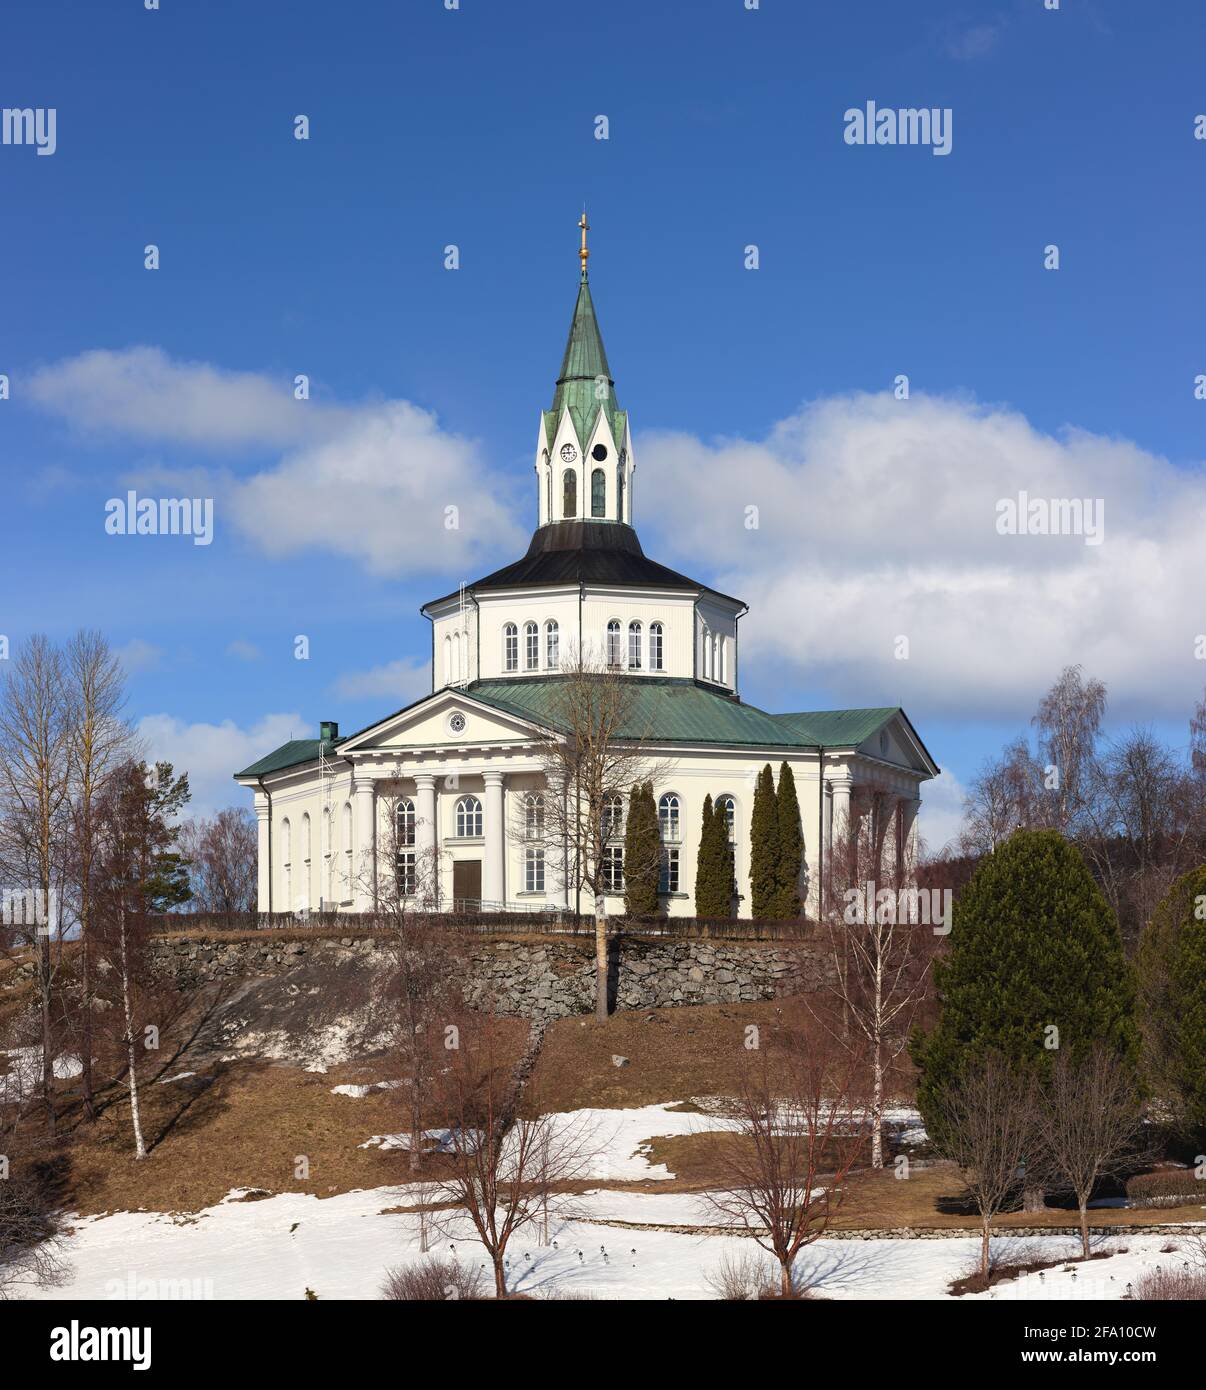 Själevads kyrka (chiesa di Själevad) vicino a Örnsköldsvik, Svezia Foto Stock